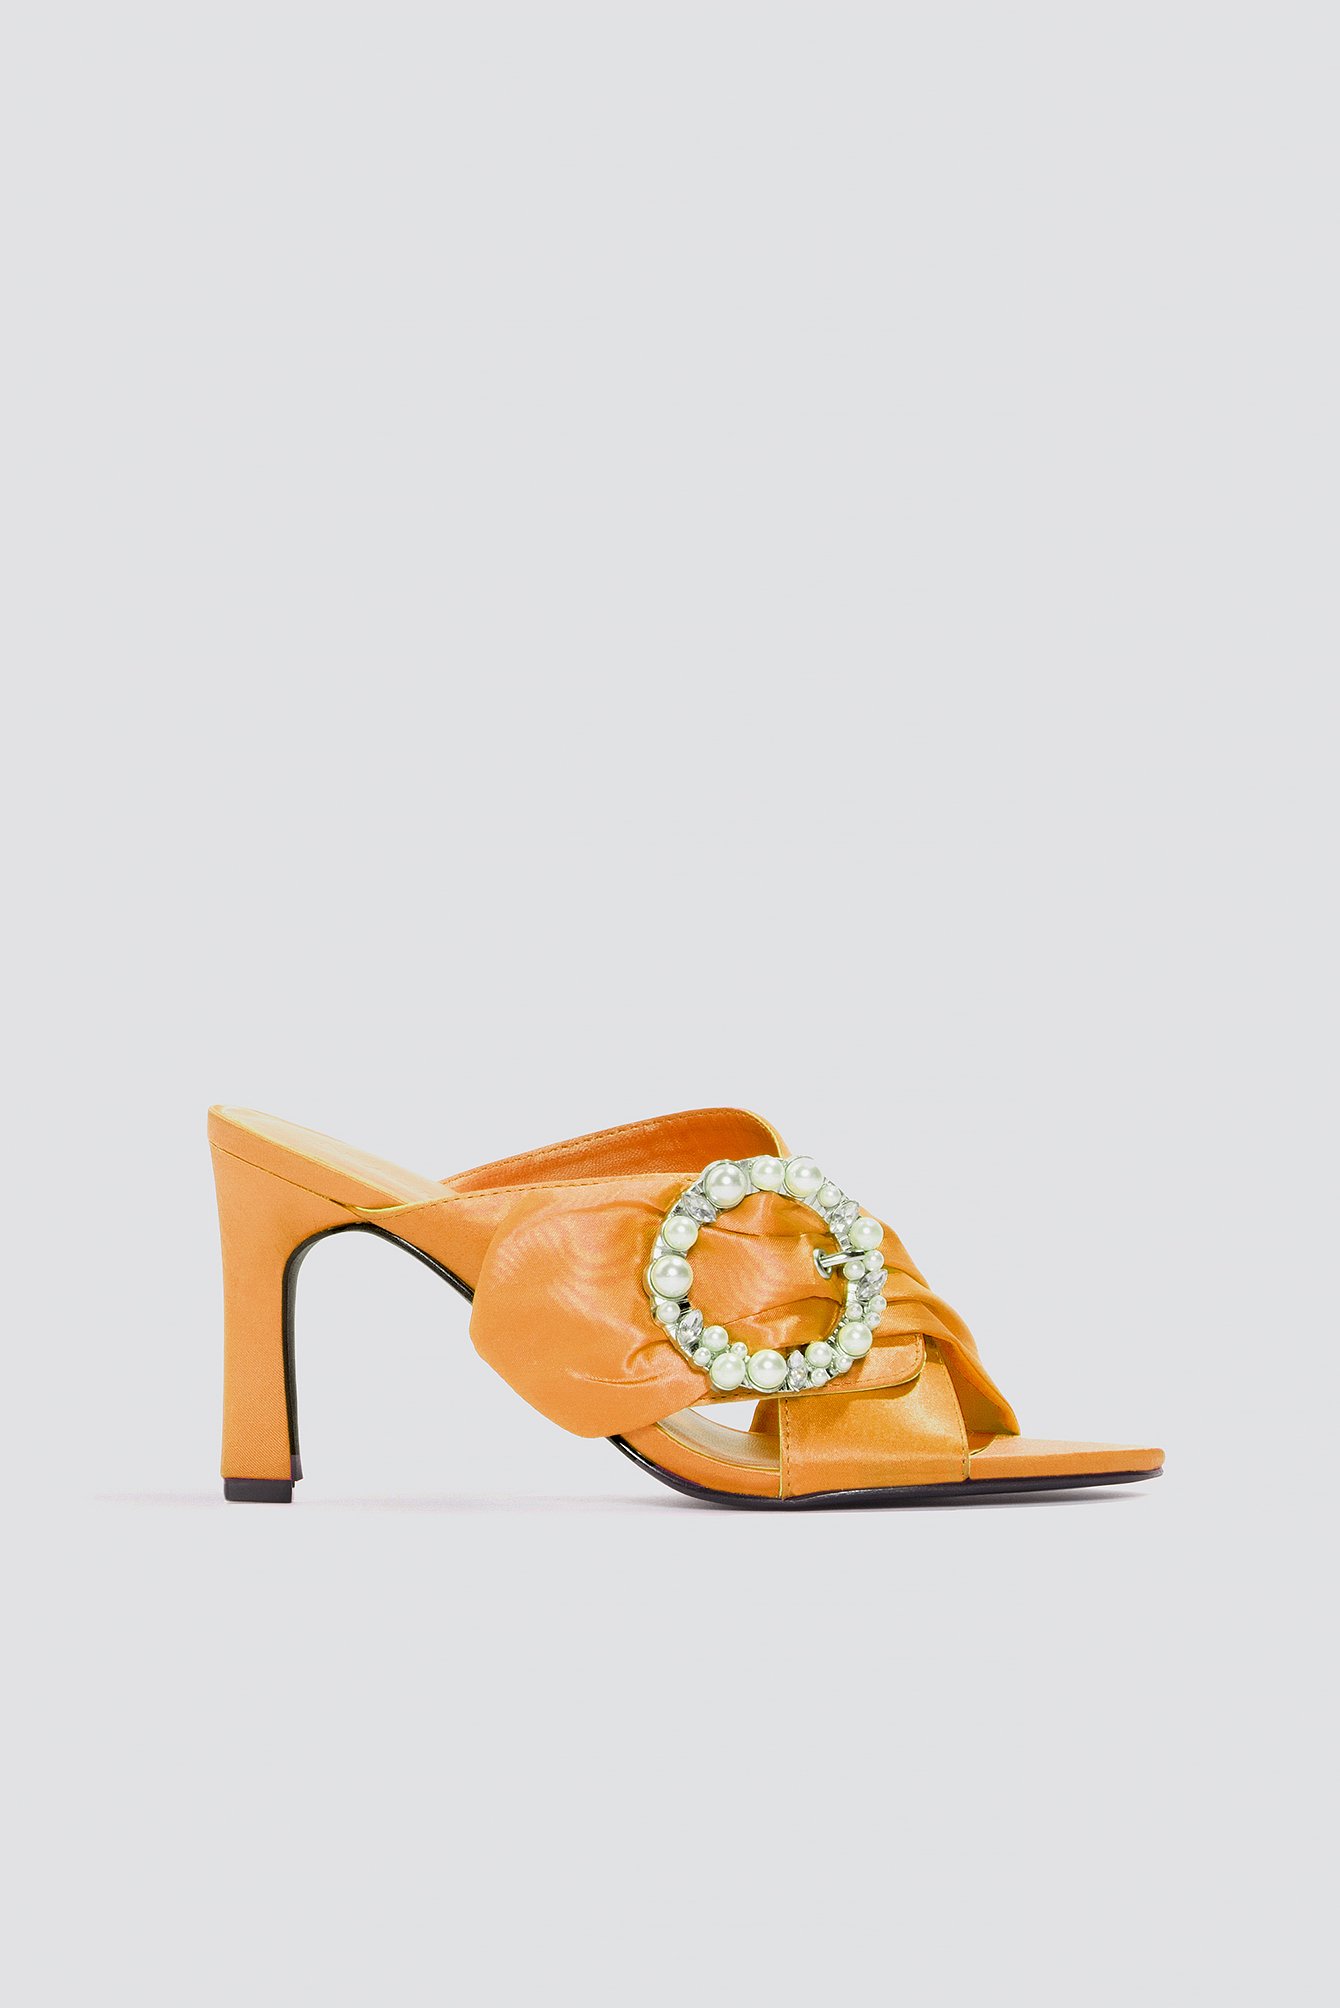 orange mule heels